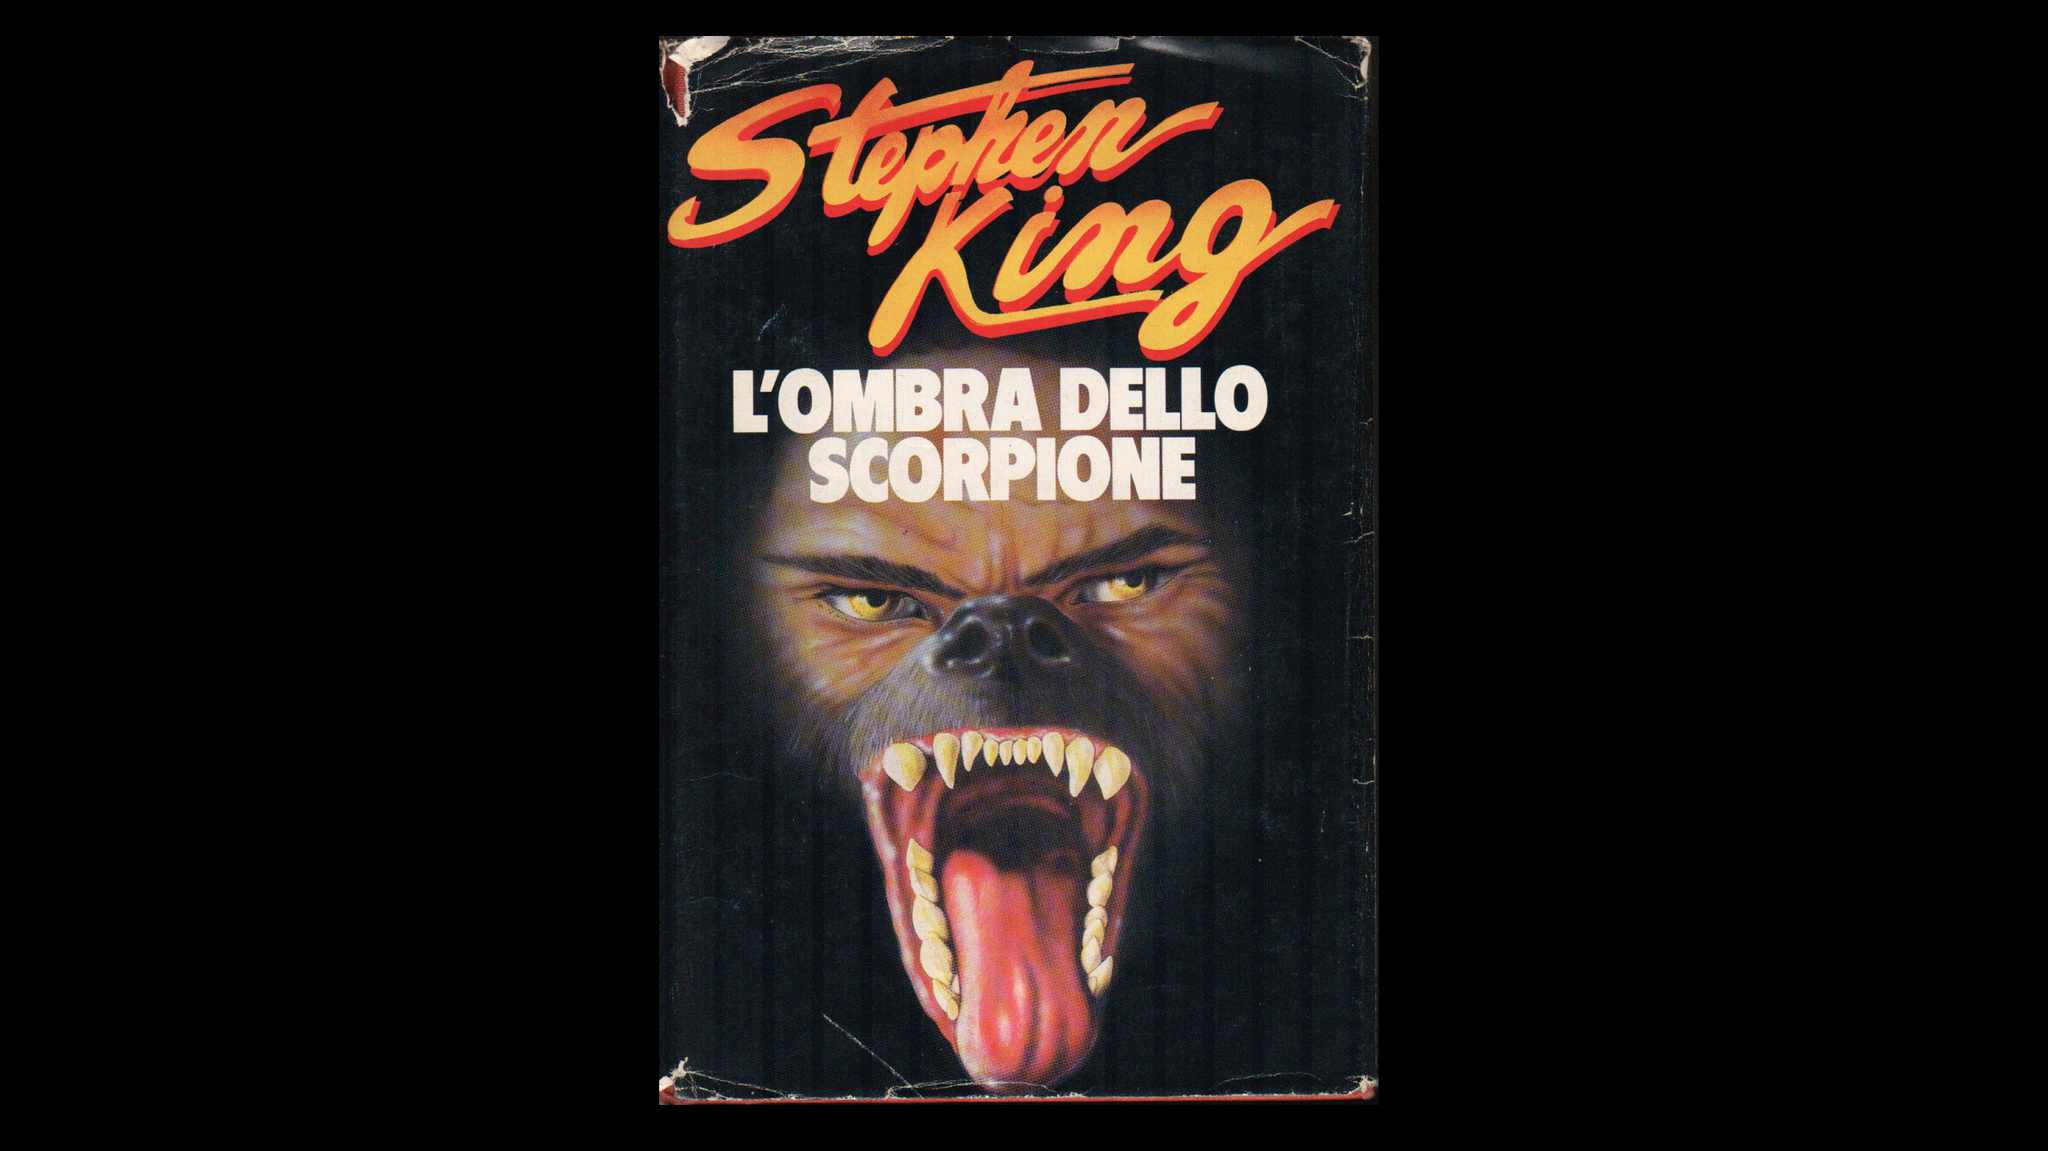 L'OMBRA DELLO SCORPIONE Stephen King  Stephen king, Scorpione,  Sovrannaturale